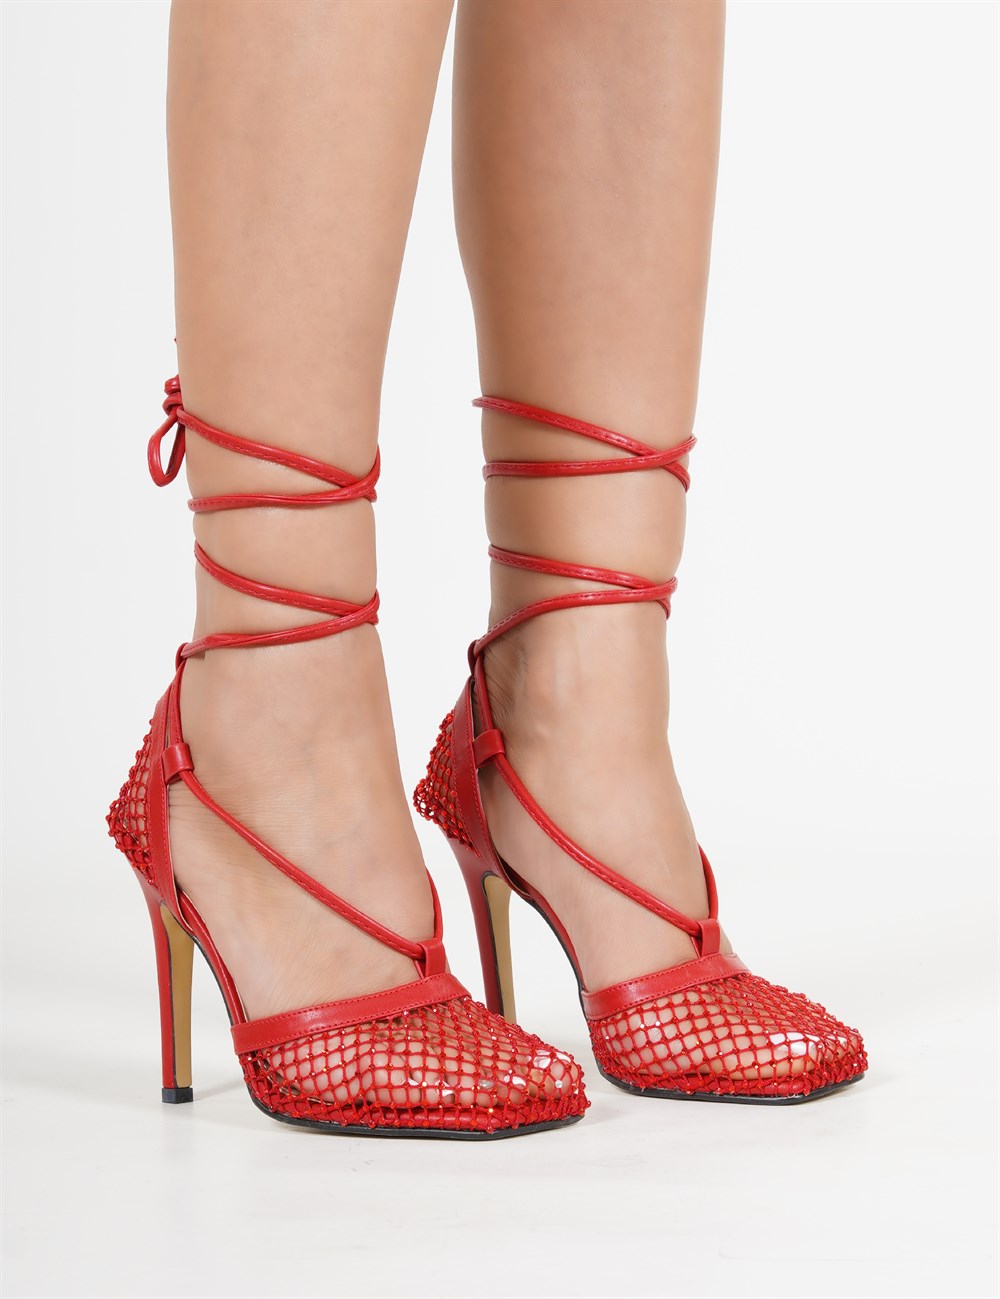 Lacey Topuklu Kadın Ayakkabı Kırmızı - Kadın Ayakkabı